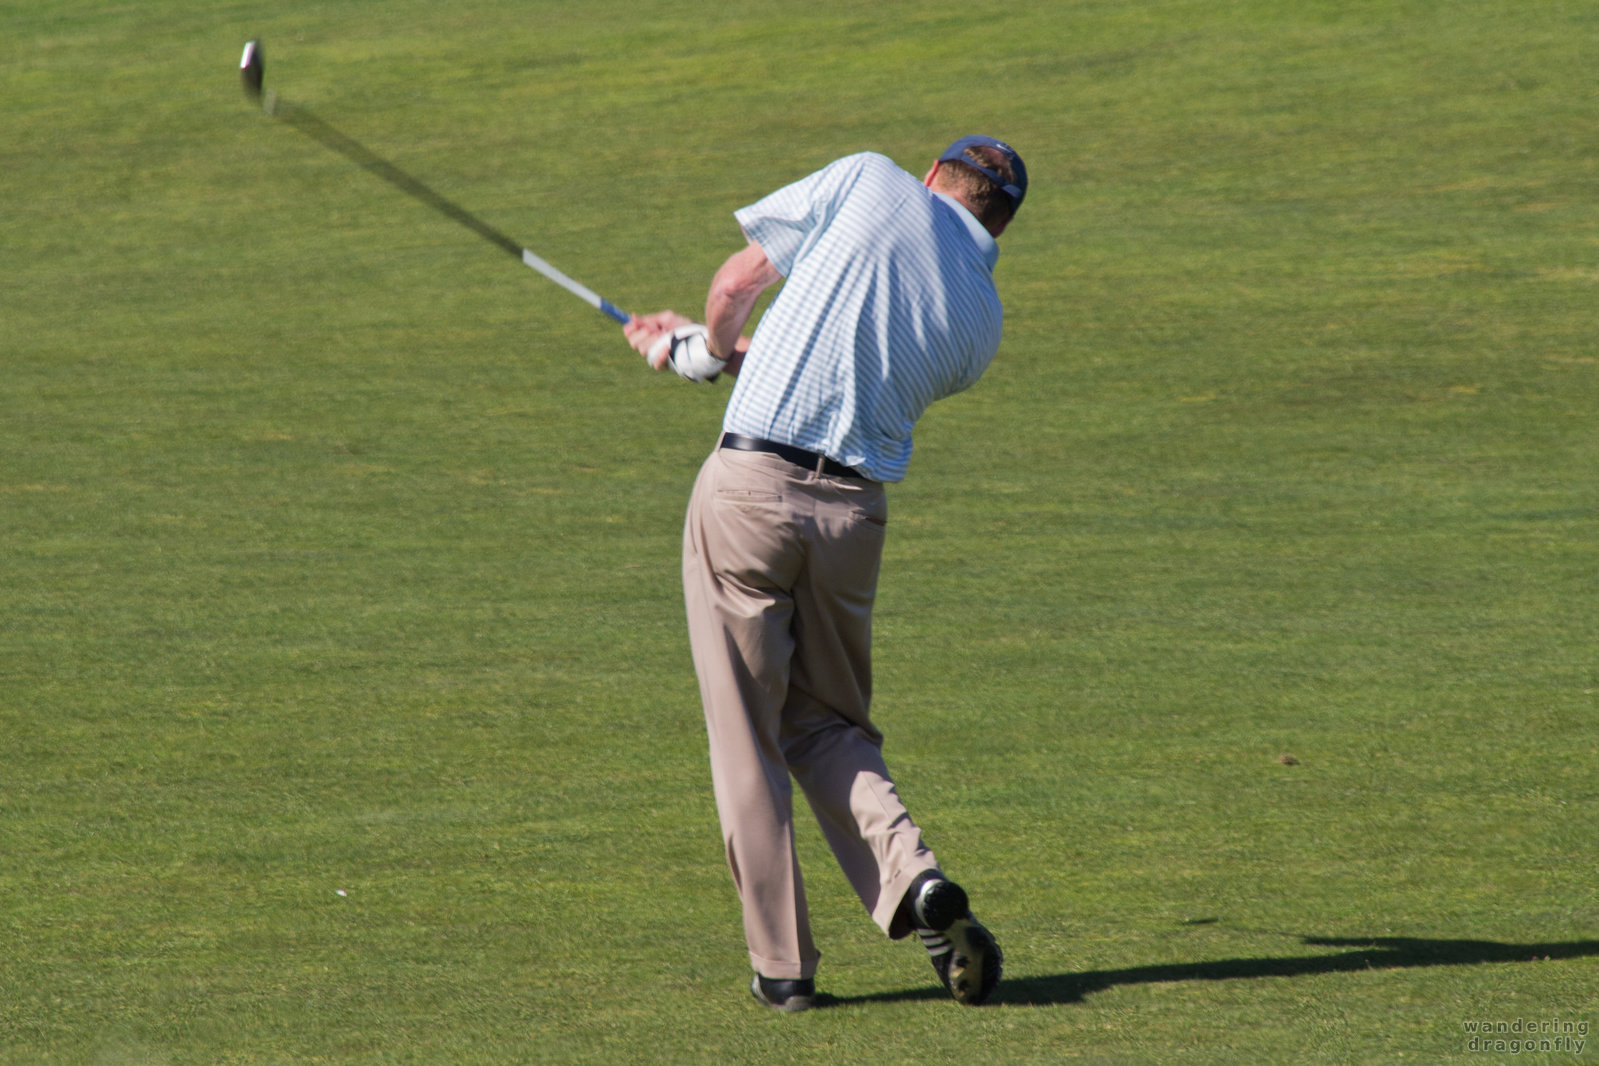 It was a good strike -- golf club, golf course, golf strike, golfer, grass